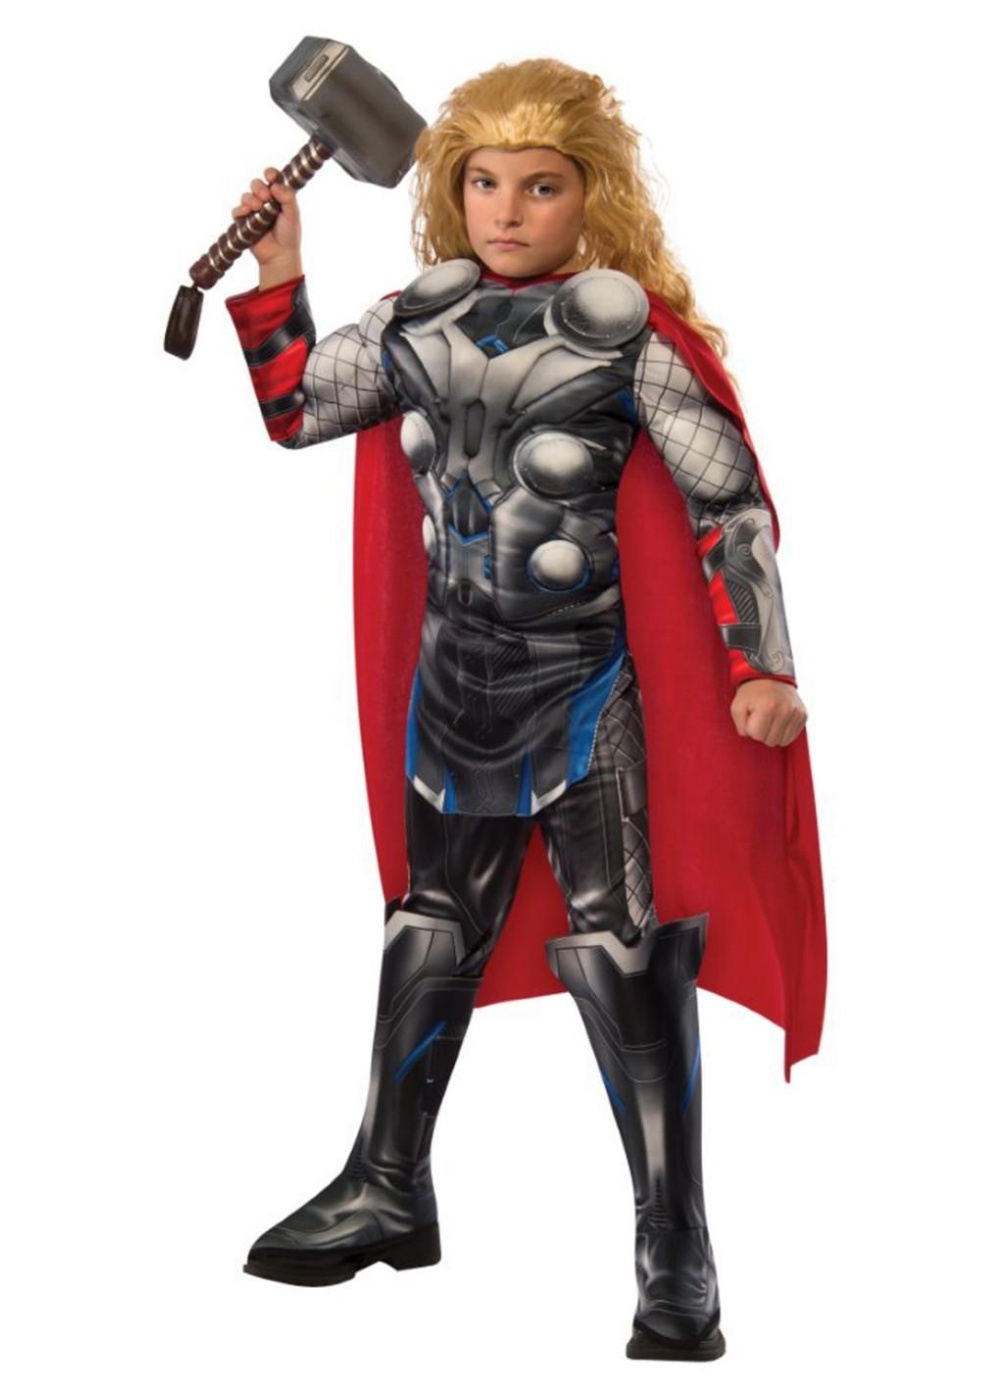  Boys Marvel Avengers Thor Costume